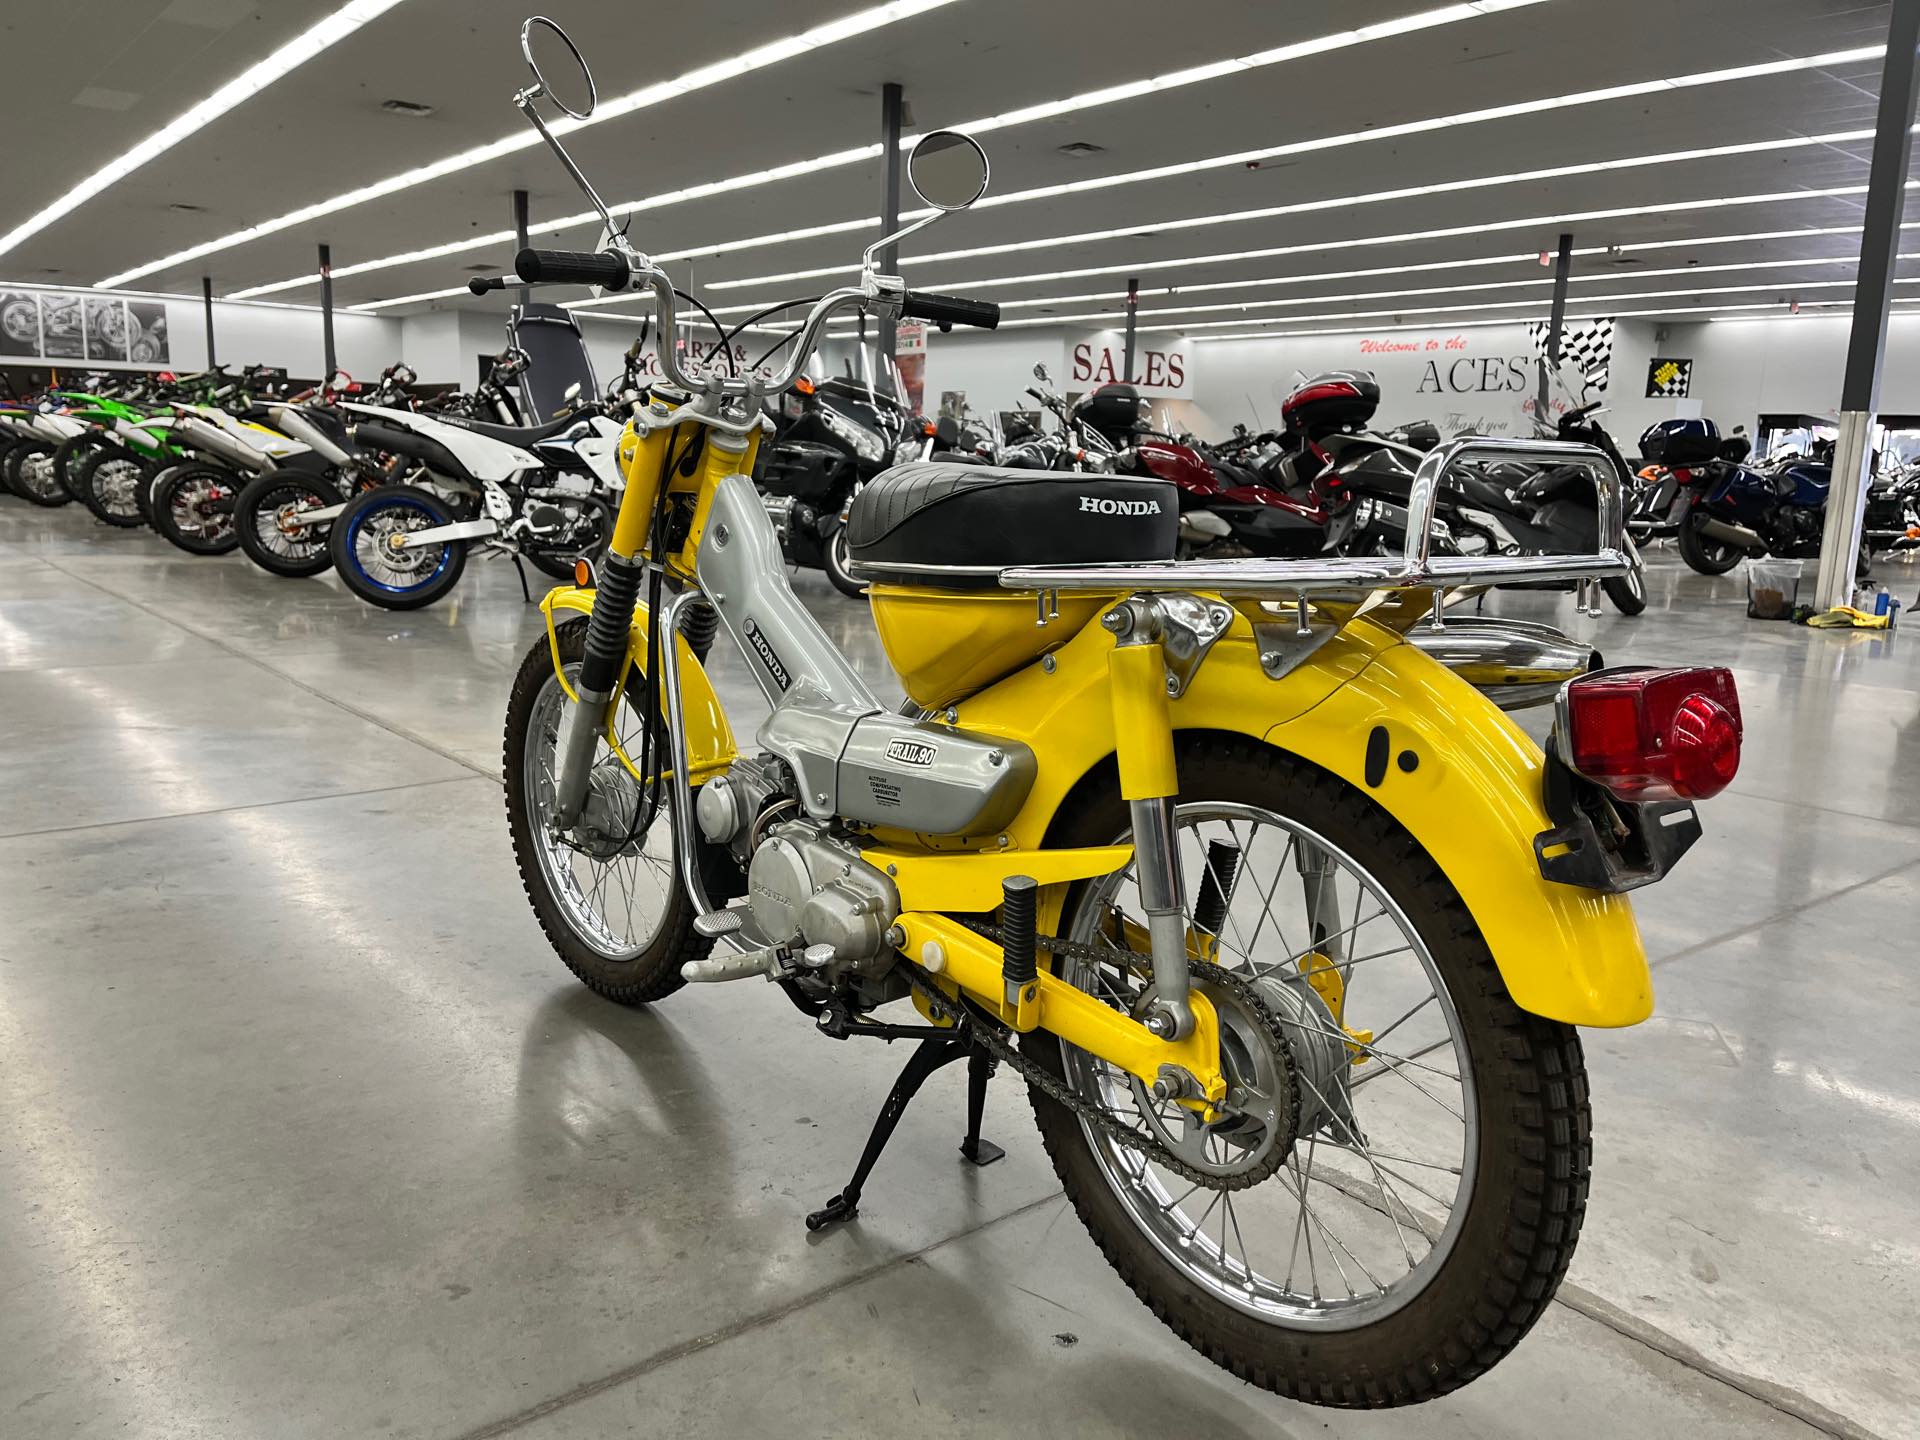 1969 HONDA CT90 at Aces Motorcycles - Denver